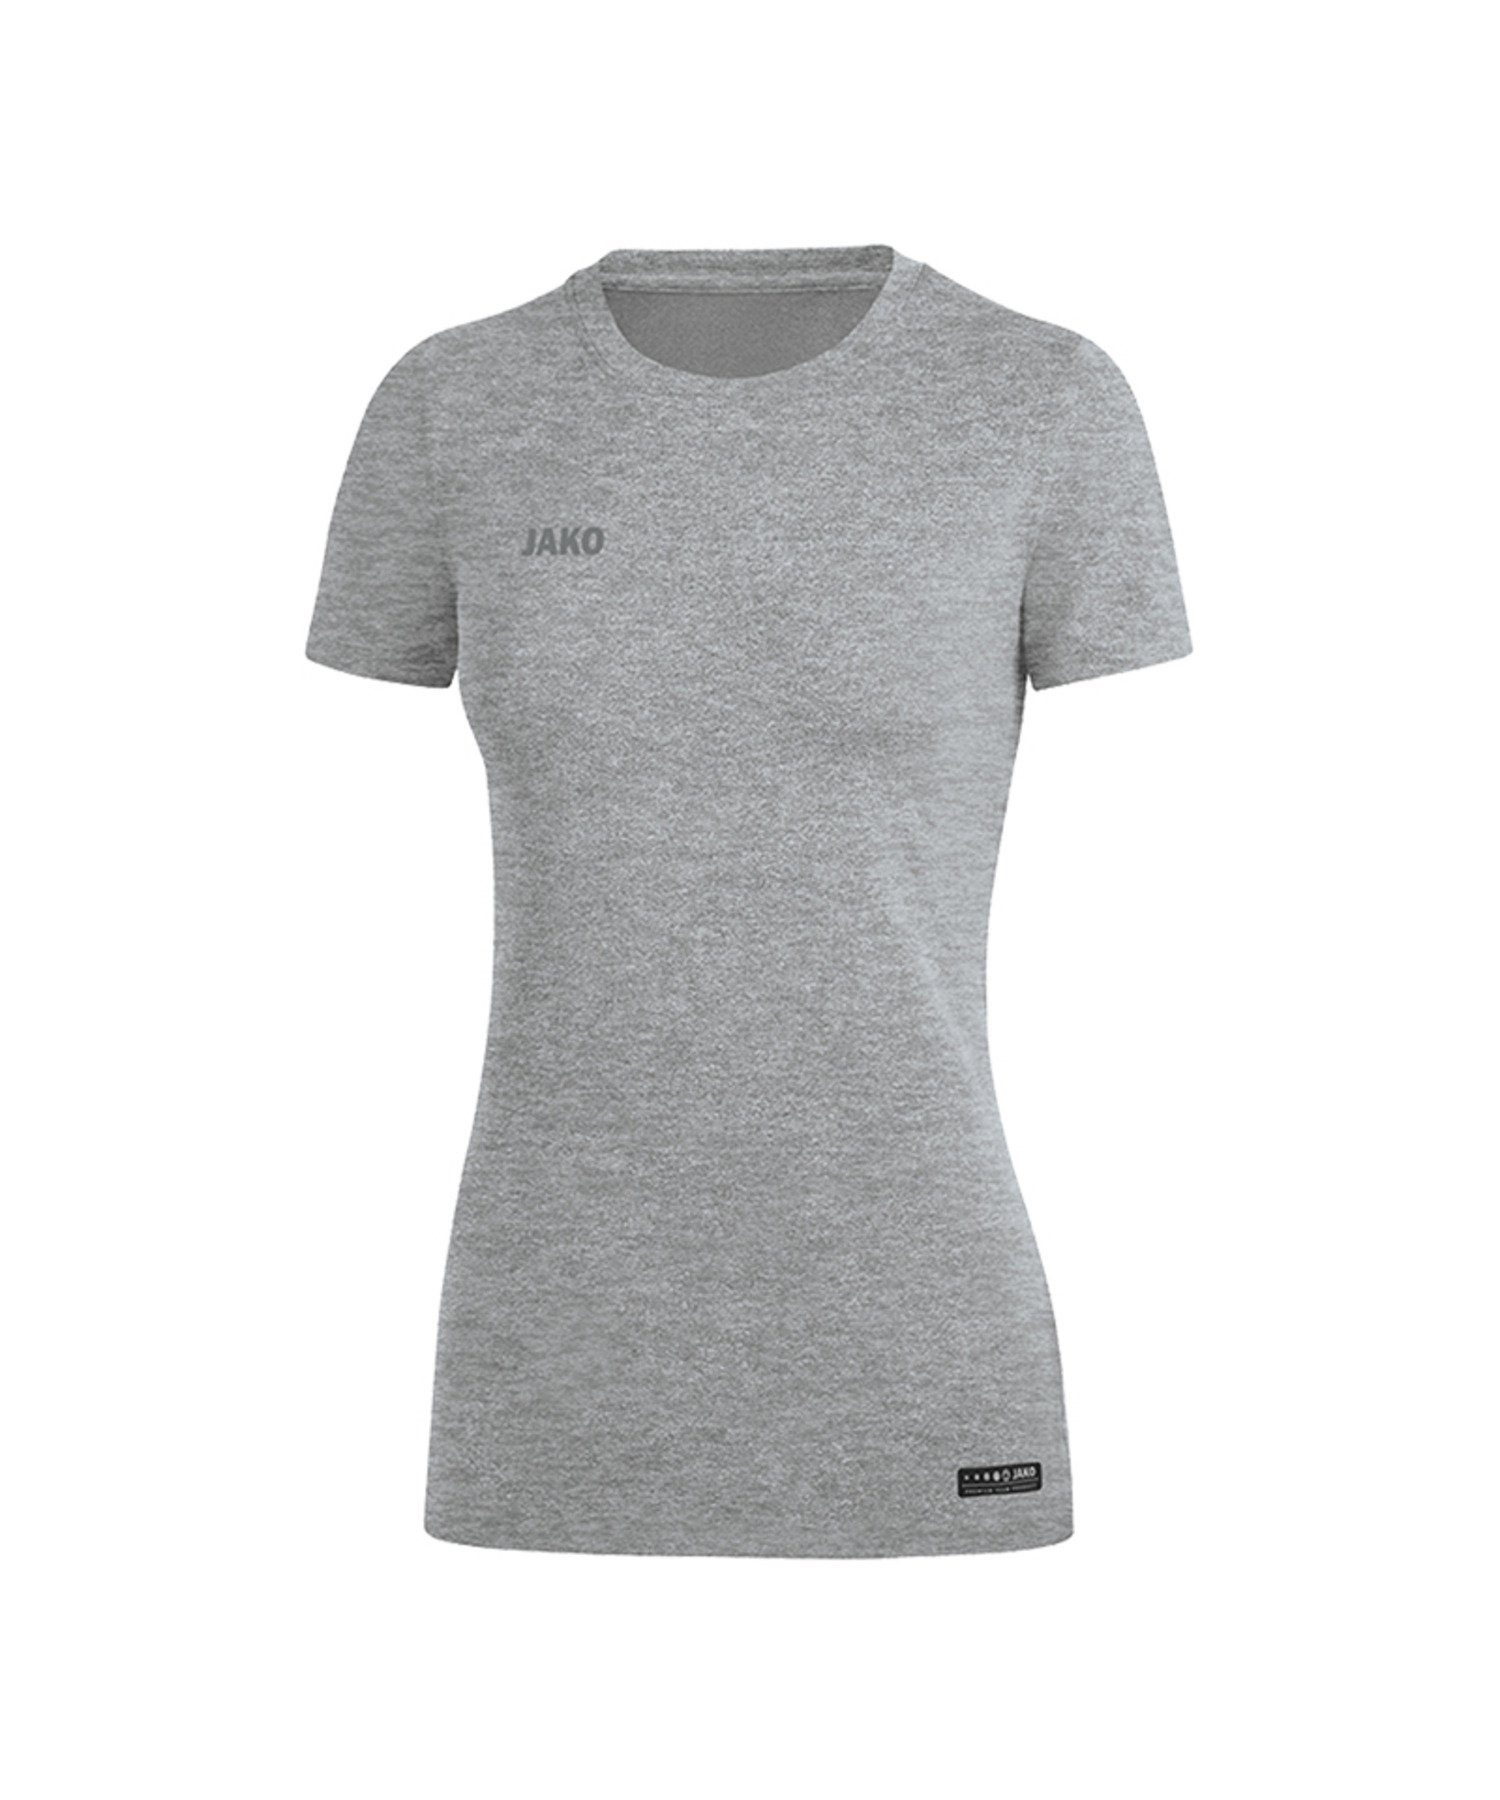 Jako T-Shirt T-Shirt Premium Basic Damen default Grau